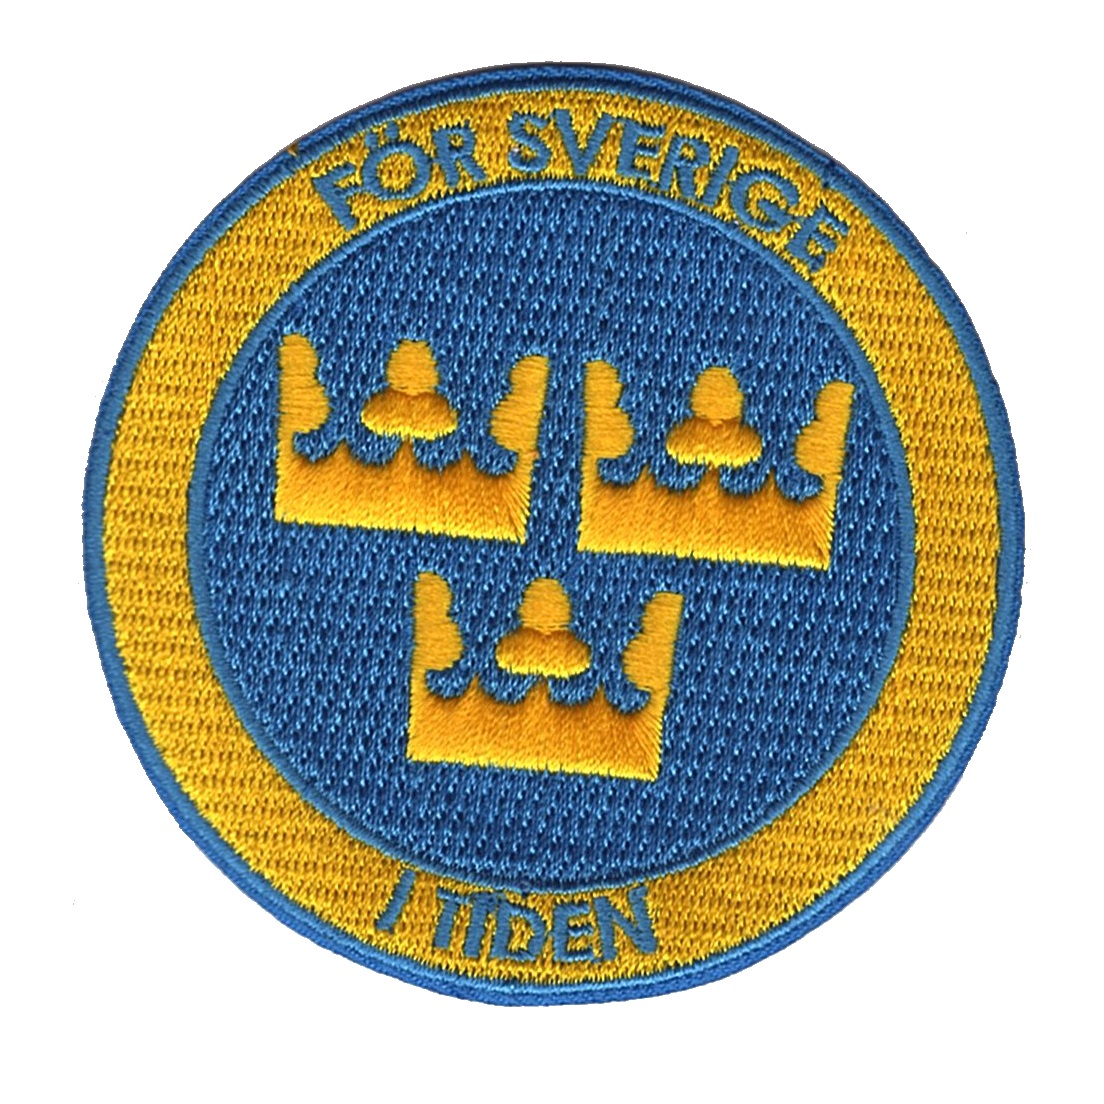 För Sverige i Tiden - Tre Kronor emblem